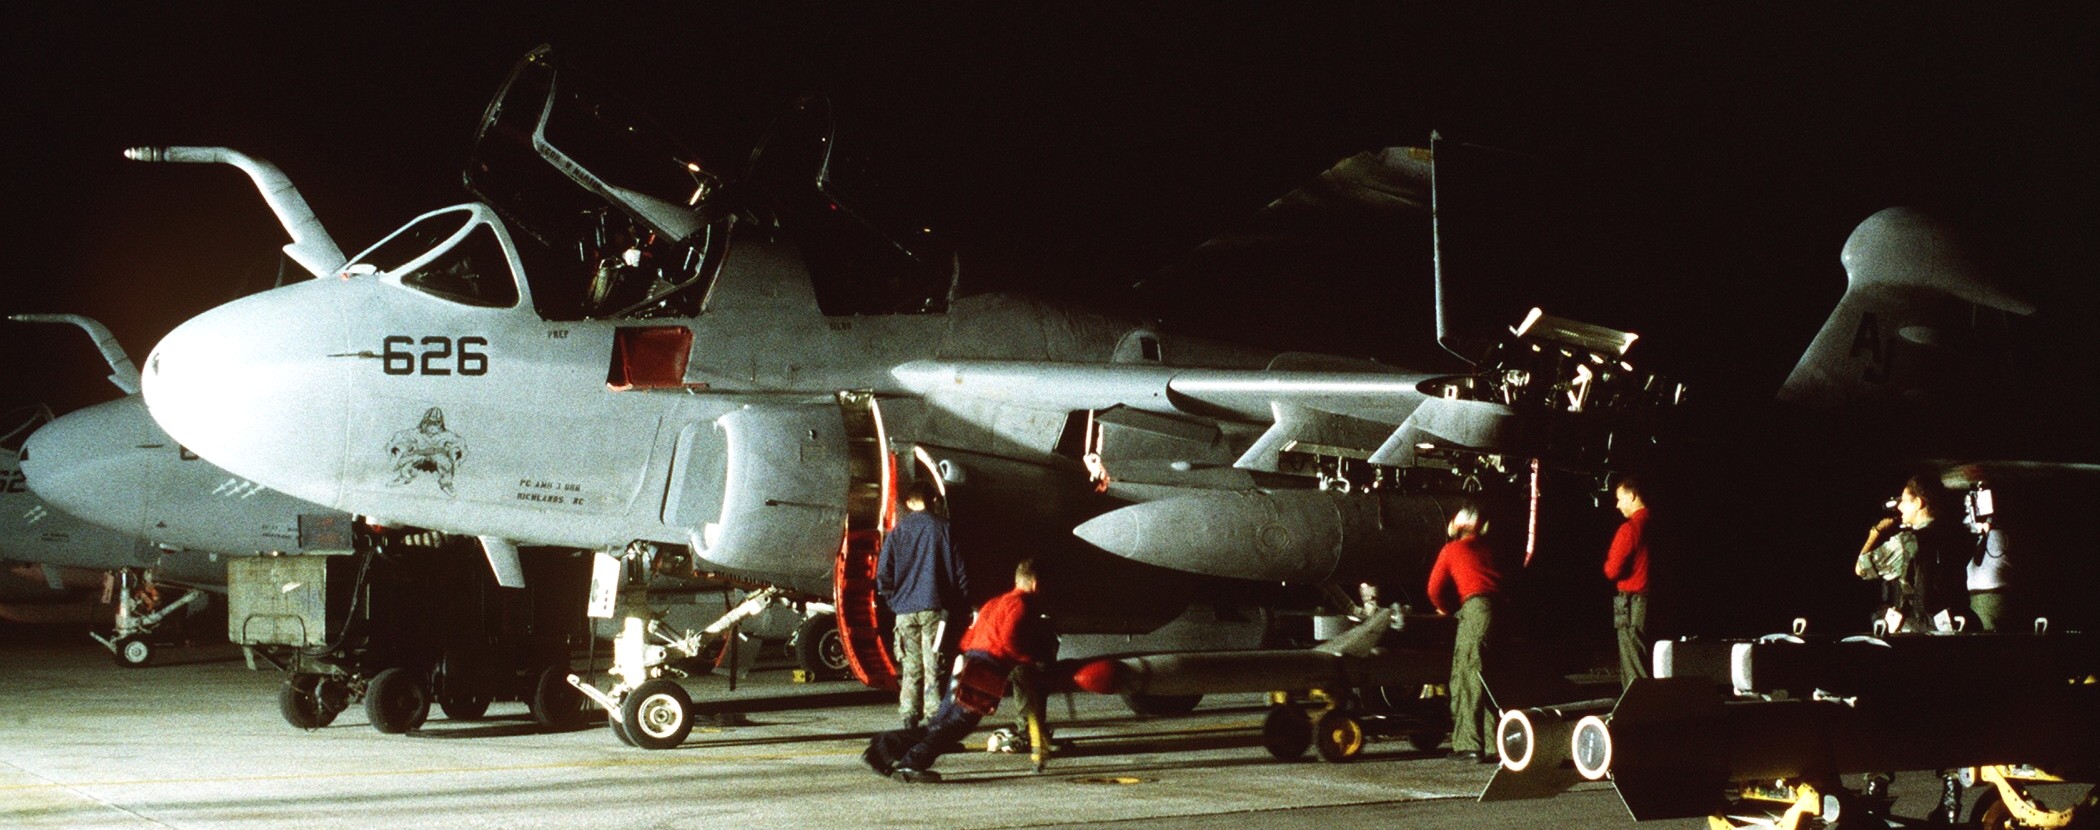 vaq-209 star warriors electronic attack squadron navy ea-6b prowler operation deny flight aviano airbase italy 106